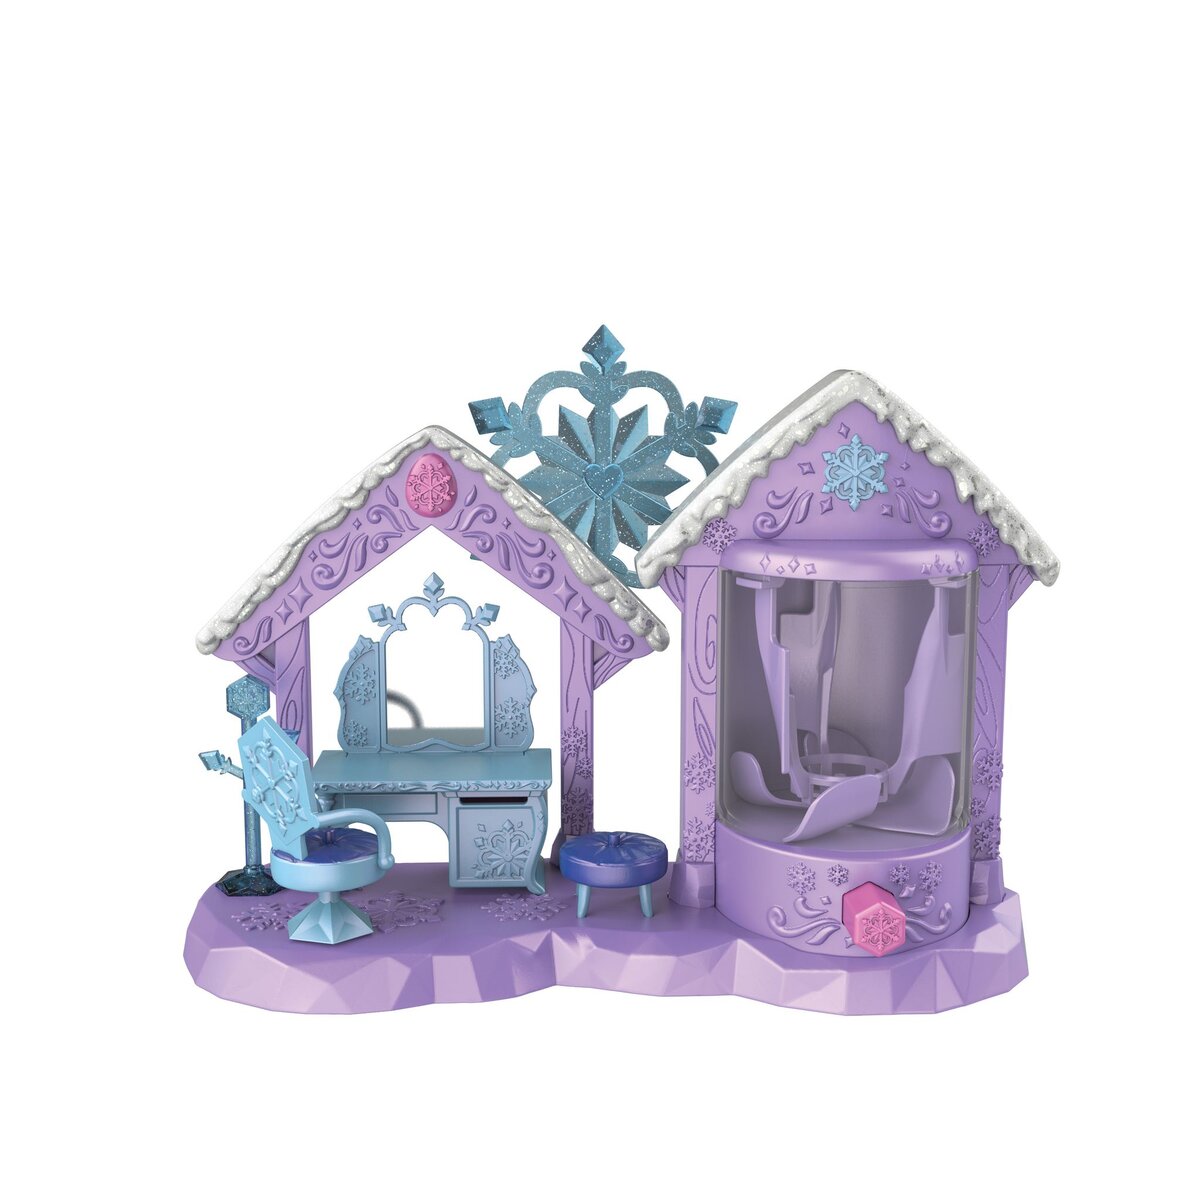 SPIN MASTER Hatchimals Colleggtibles - Coffret de jeu Salon de Beauté étincelant avec 5 figurines exclusives famille royale + accessoires 